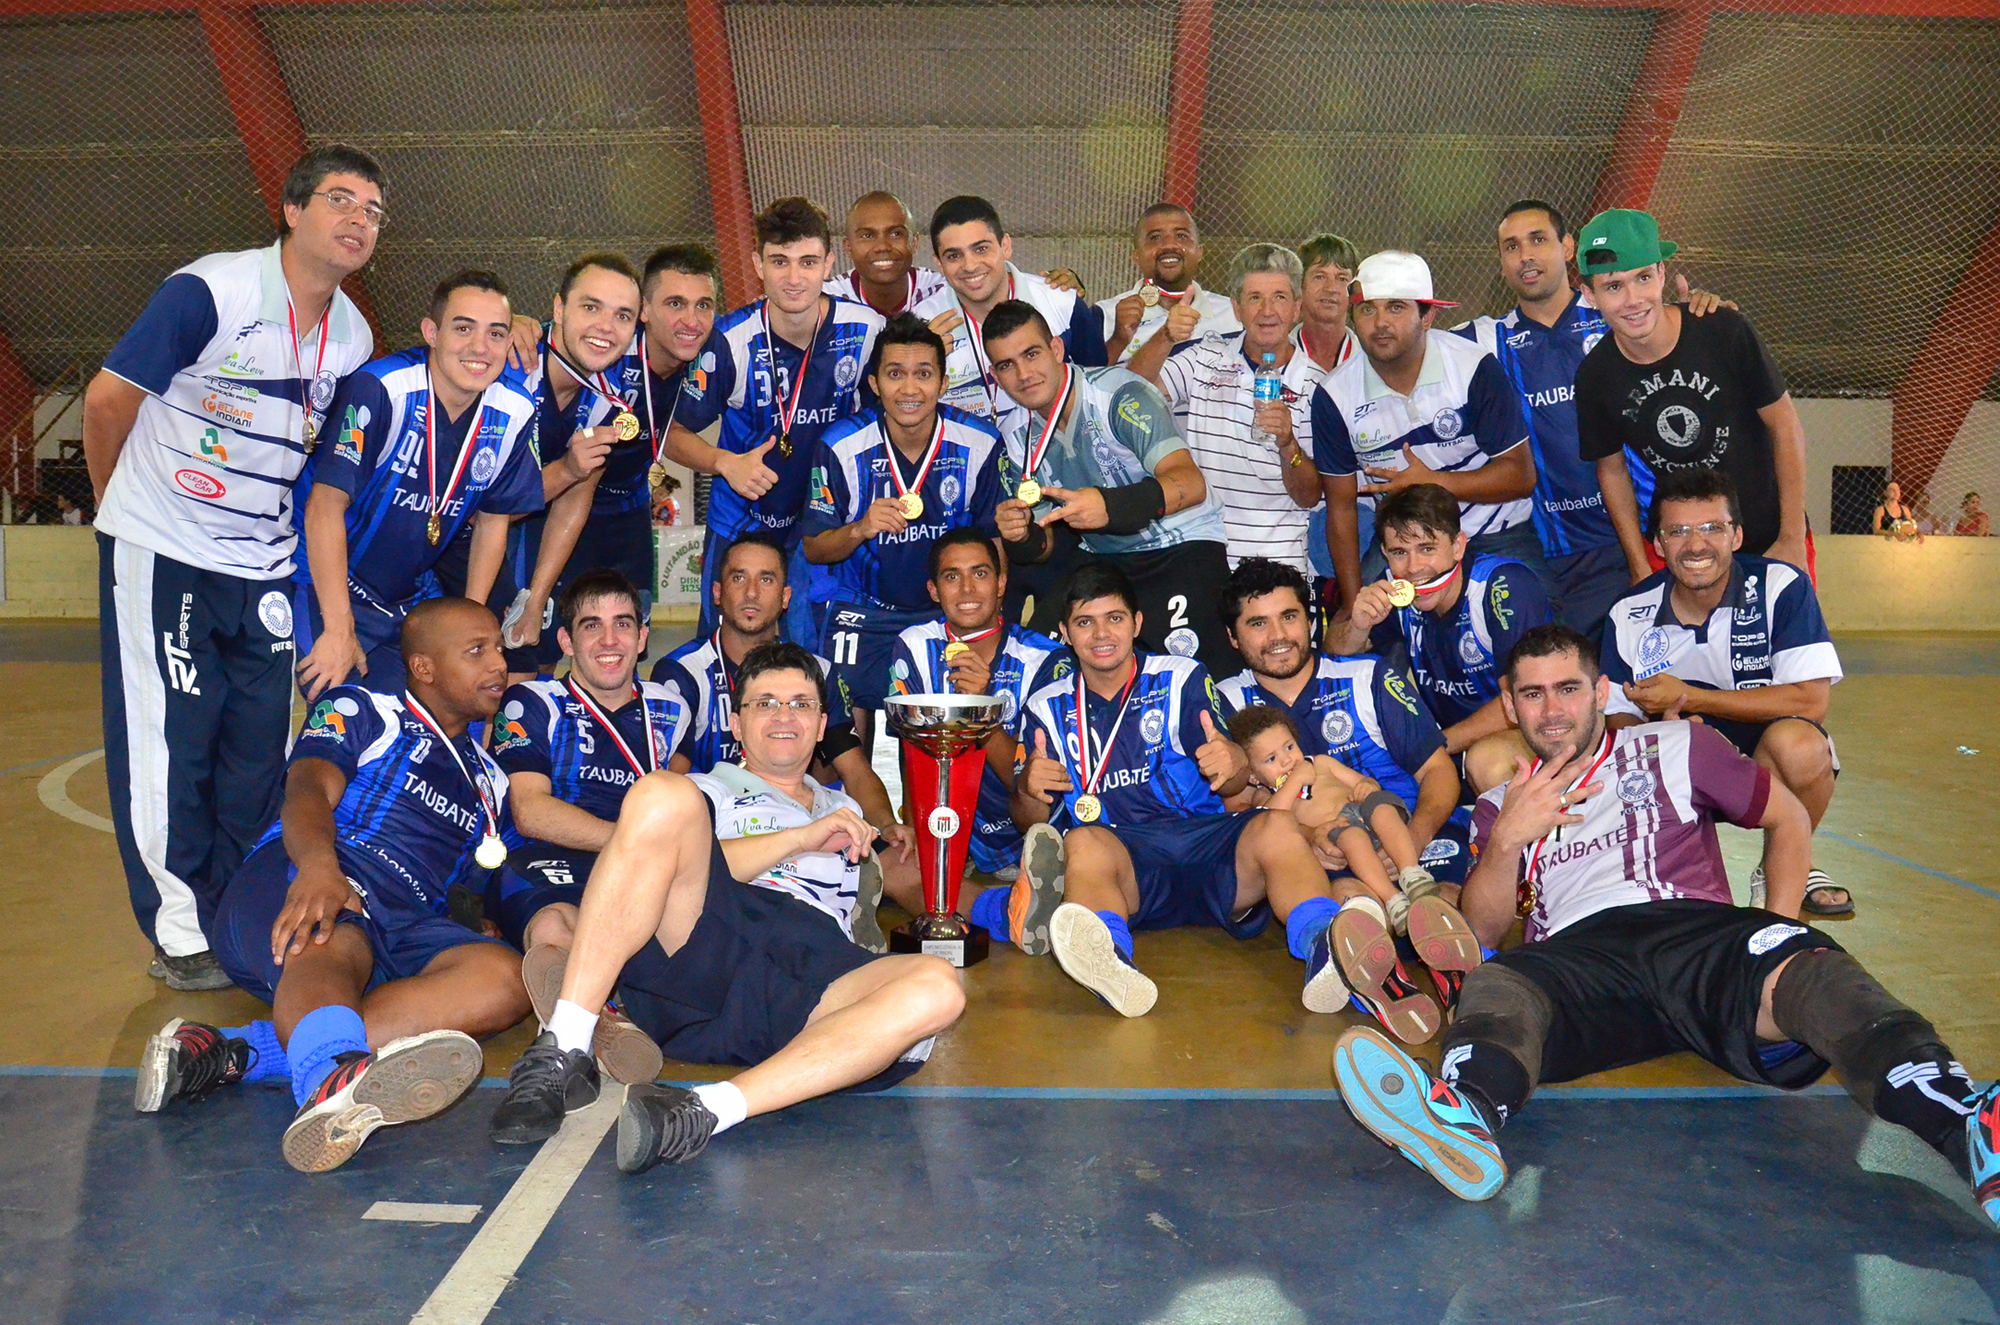 Taubat Futsal sagrou-se campeo em duas competies nesse ano e vai disputar a elite do Paulista em 2014 - Foto: Jonas Barbetta/Top 10 Comunicao